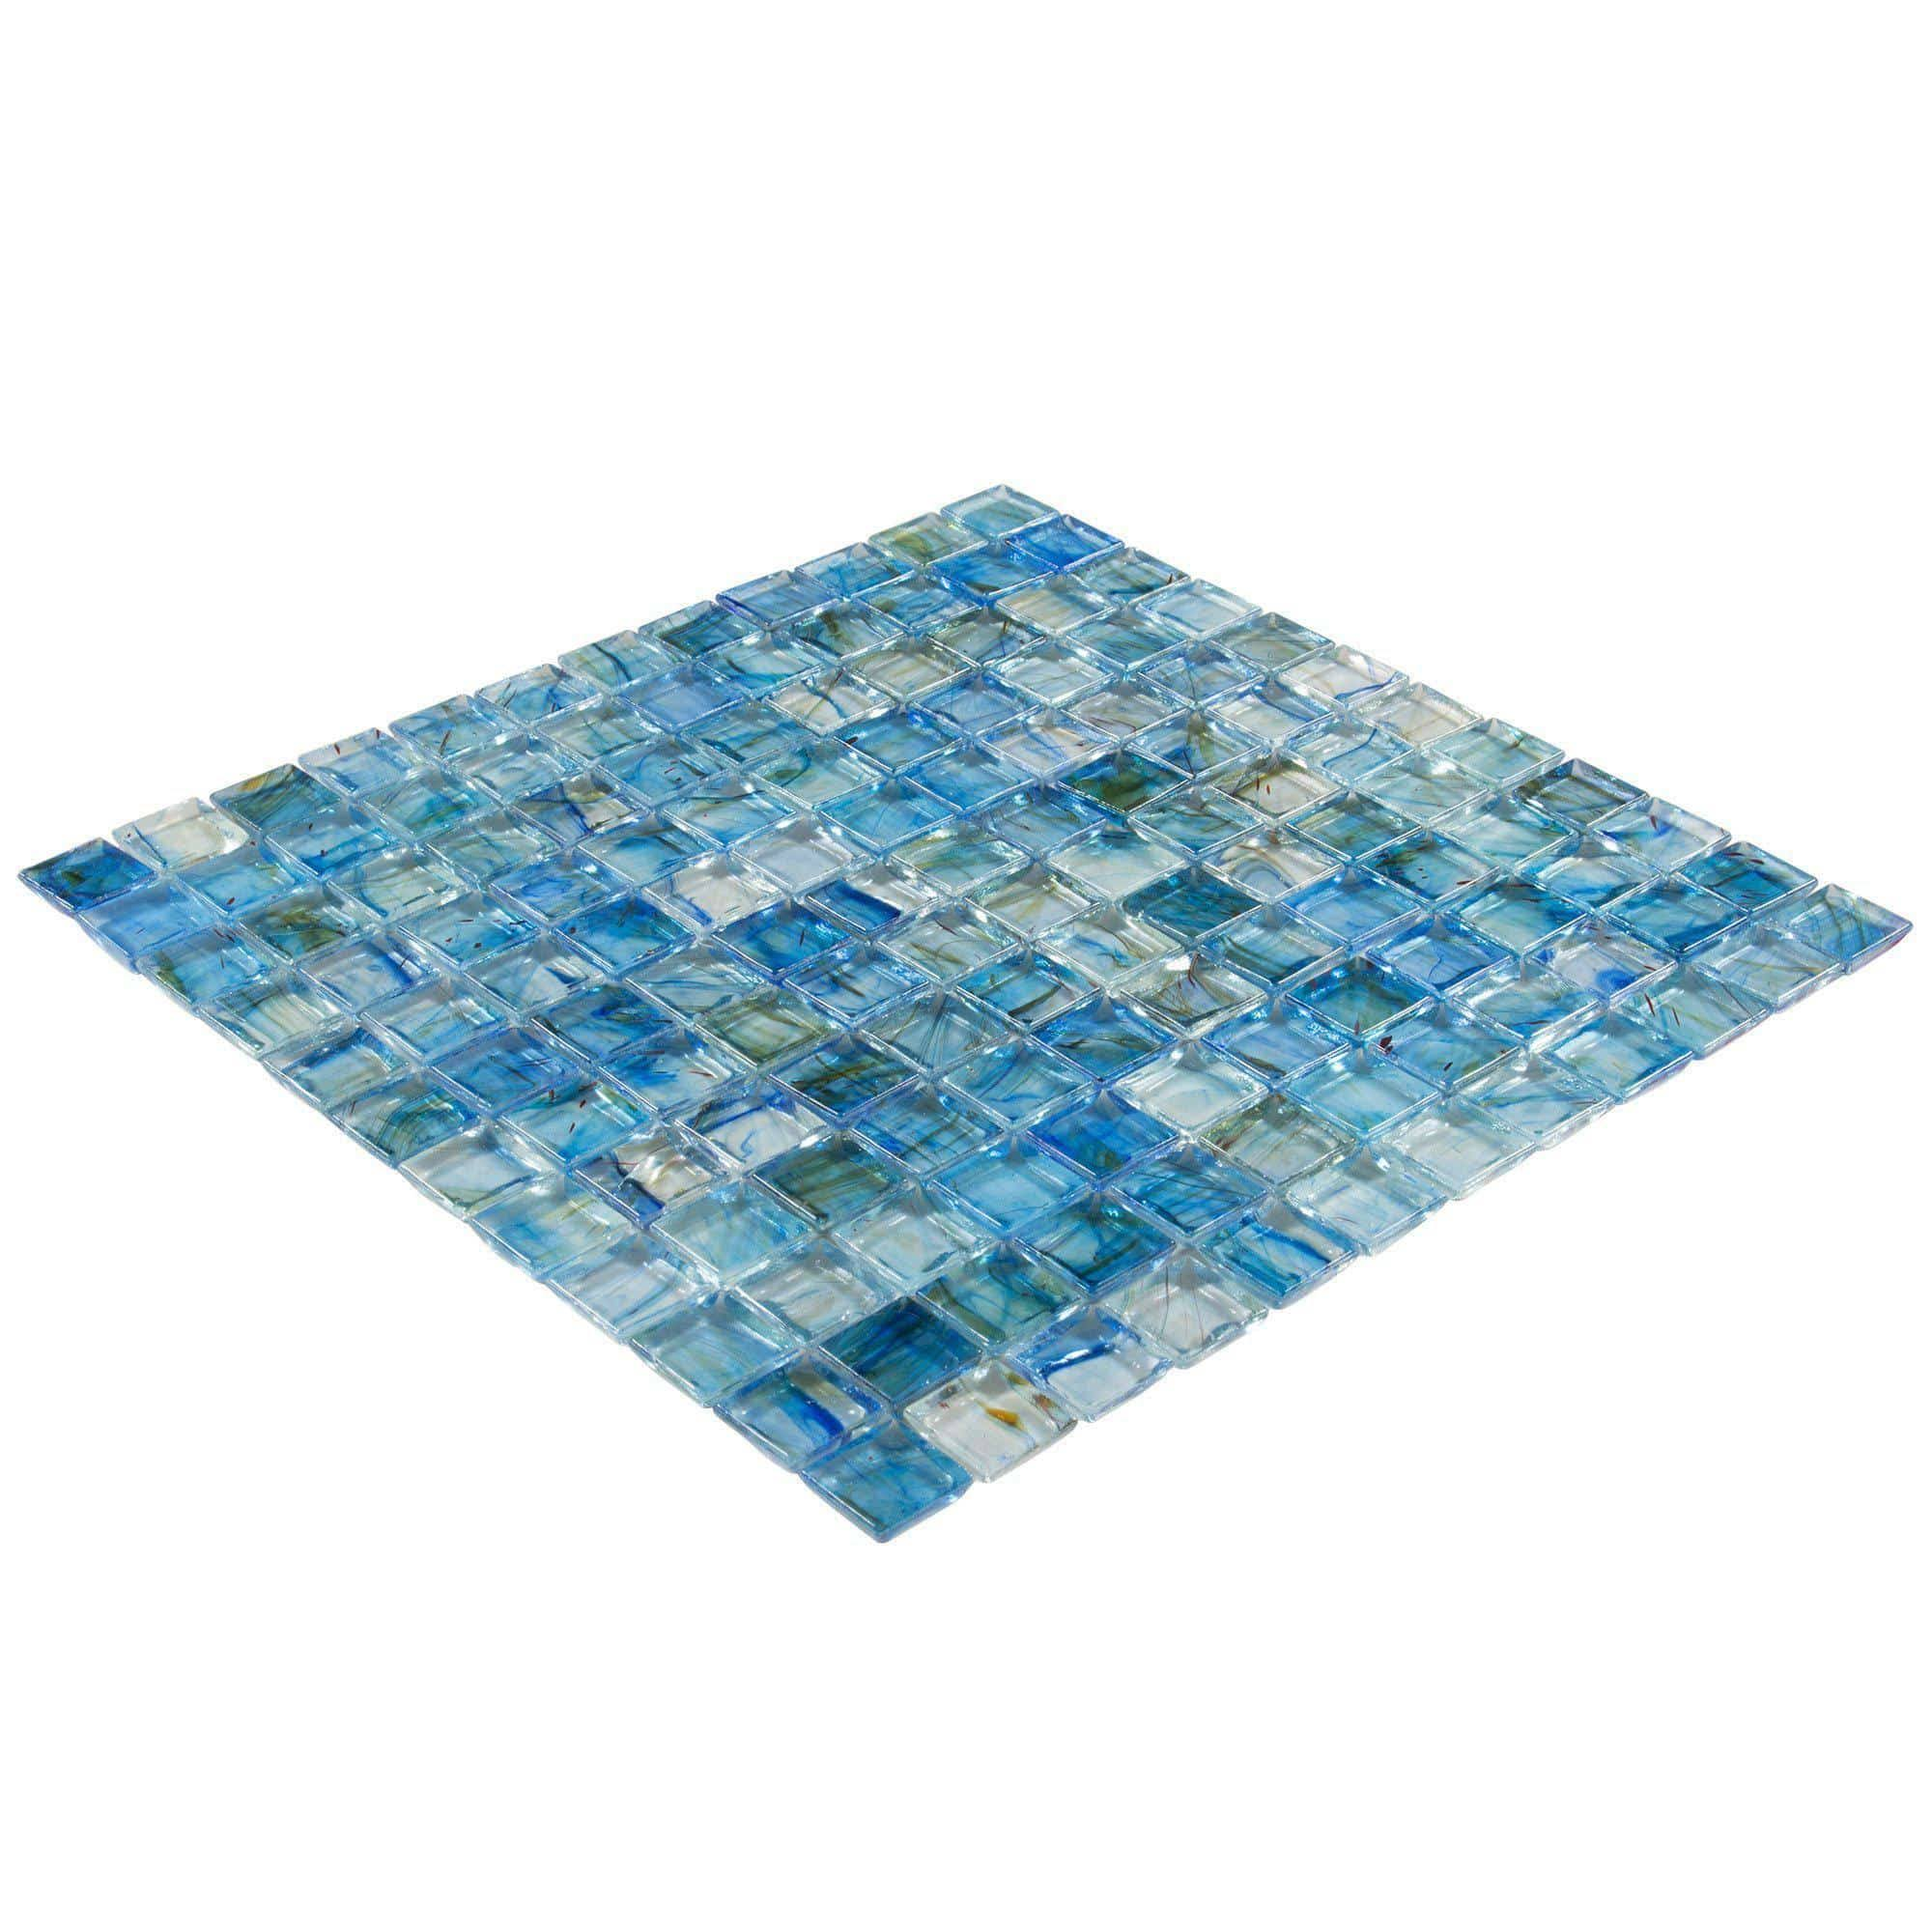 Nautilus Dew Drops 1 X 1 Glass Blend Mosaic Tile